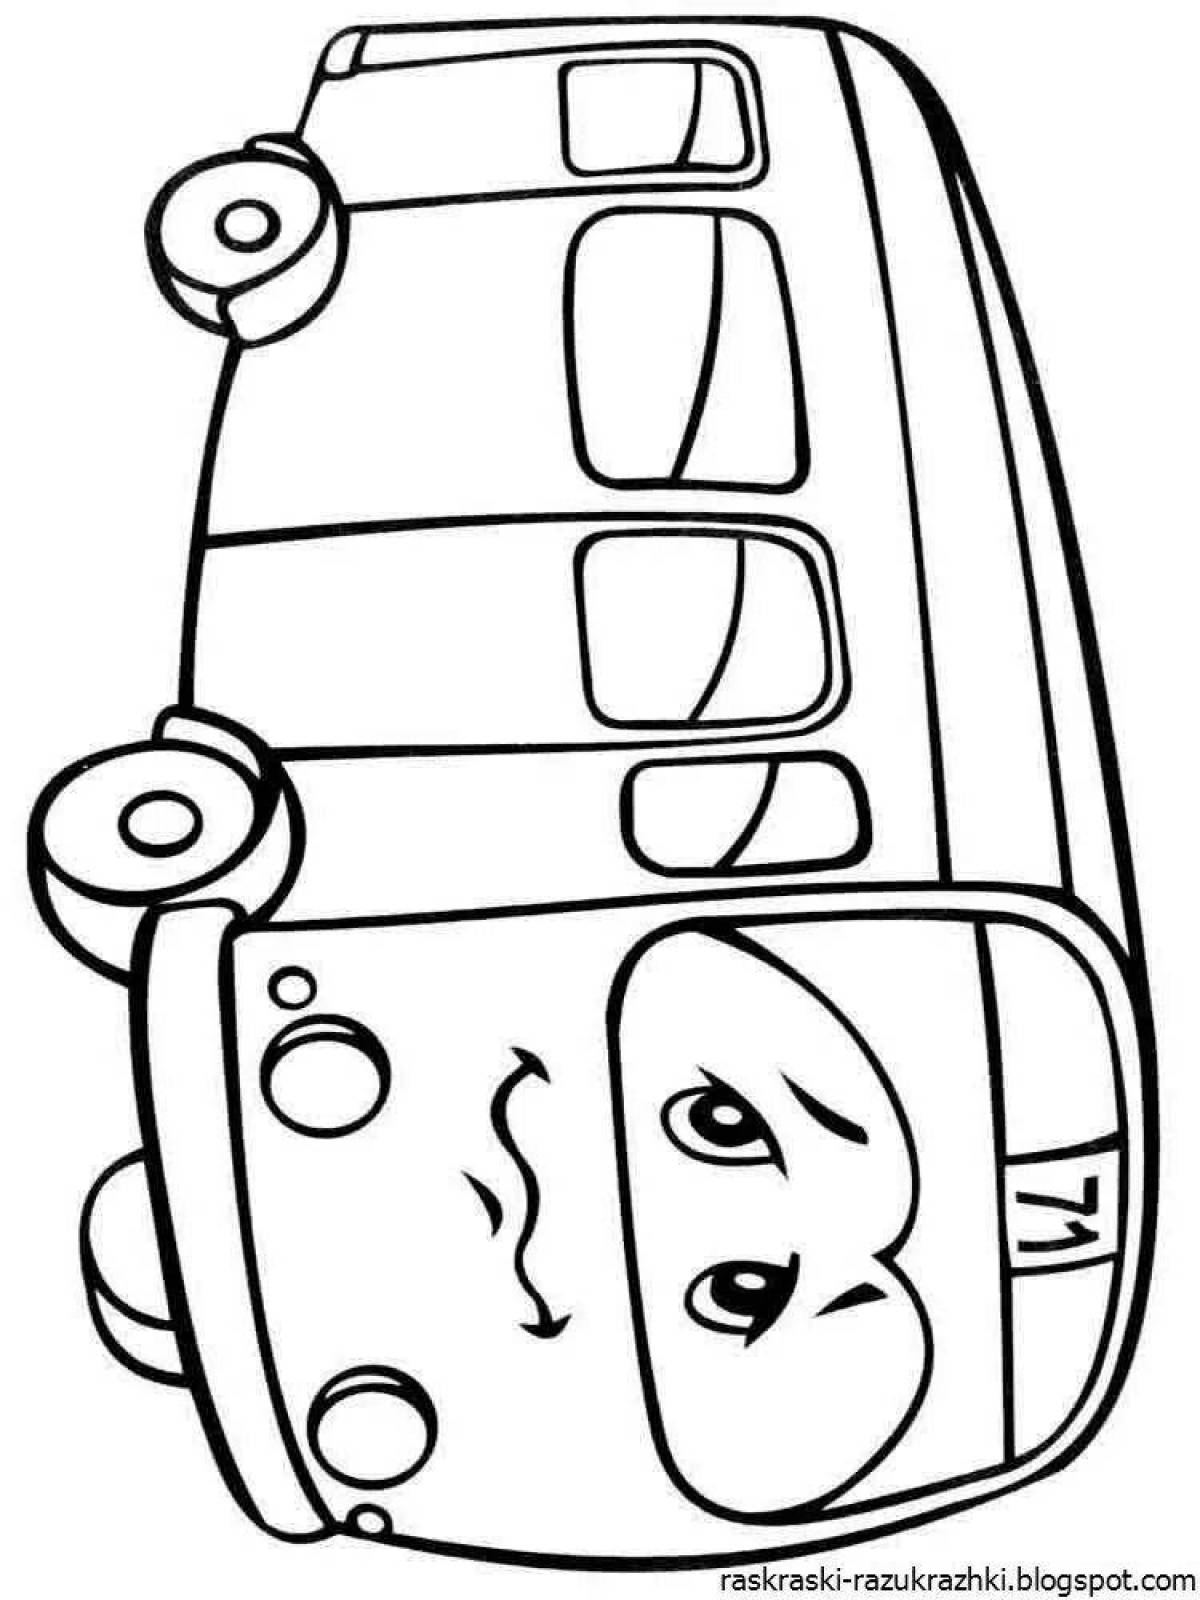 Креативная автобусная раскраска для детей 3-4 лет